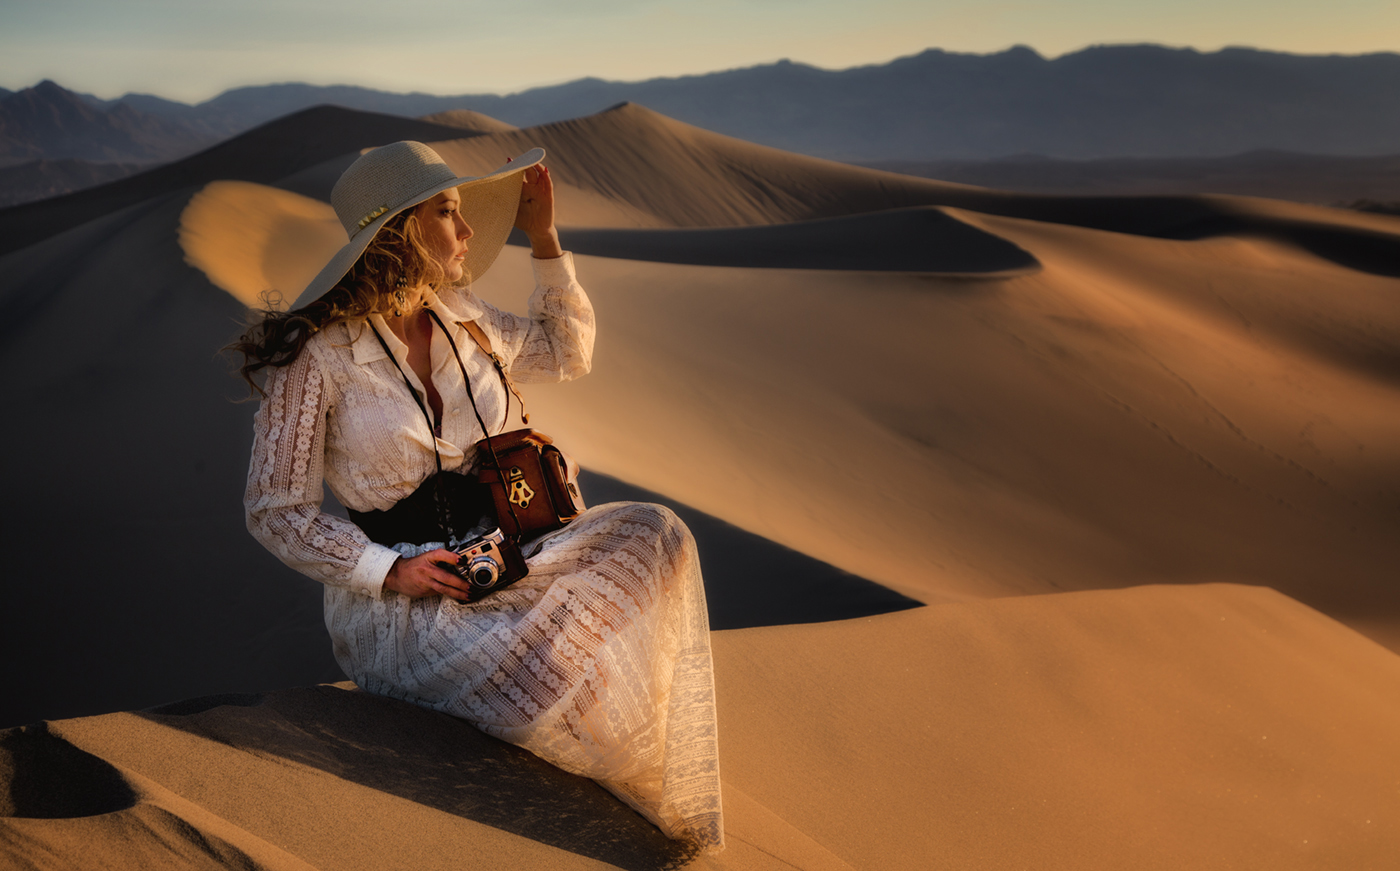 Louis Vuitton - Shot in the spectacular Californian desert